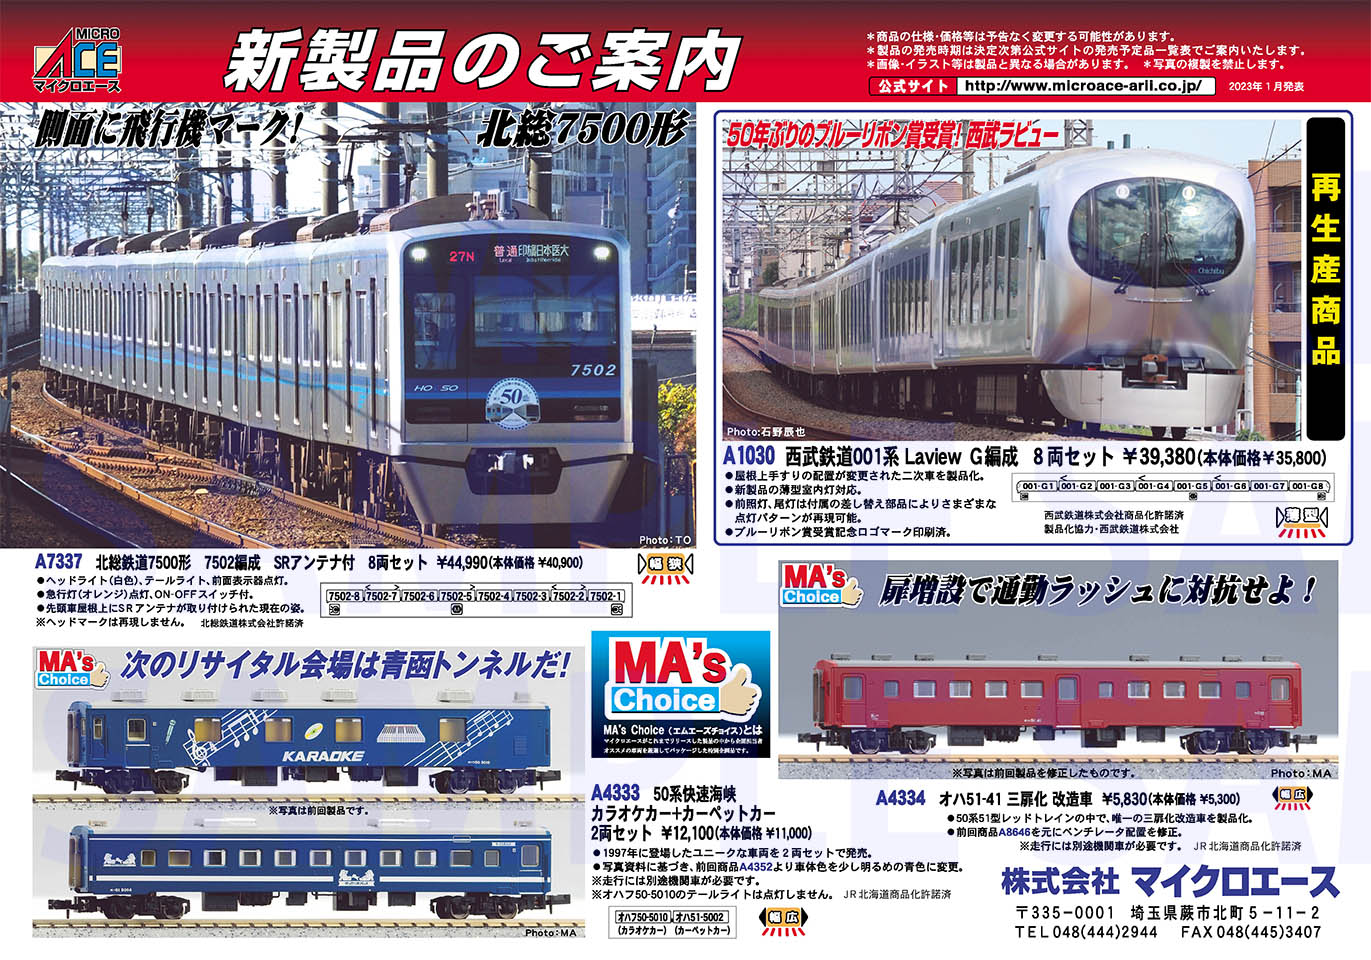 オハ51-41 三扉化 改造車 (鉄道模型) - ホビーサーチ 鉄道模型 N